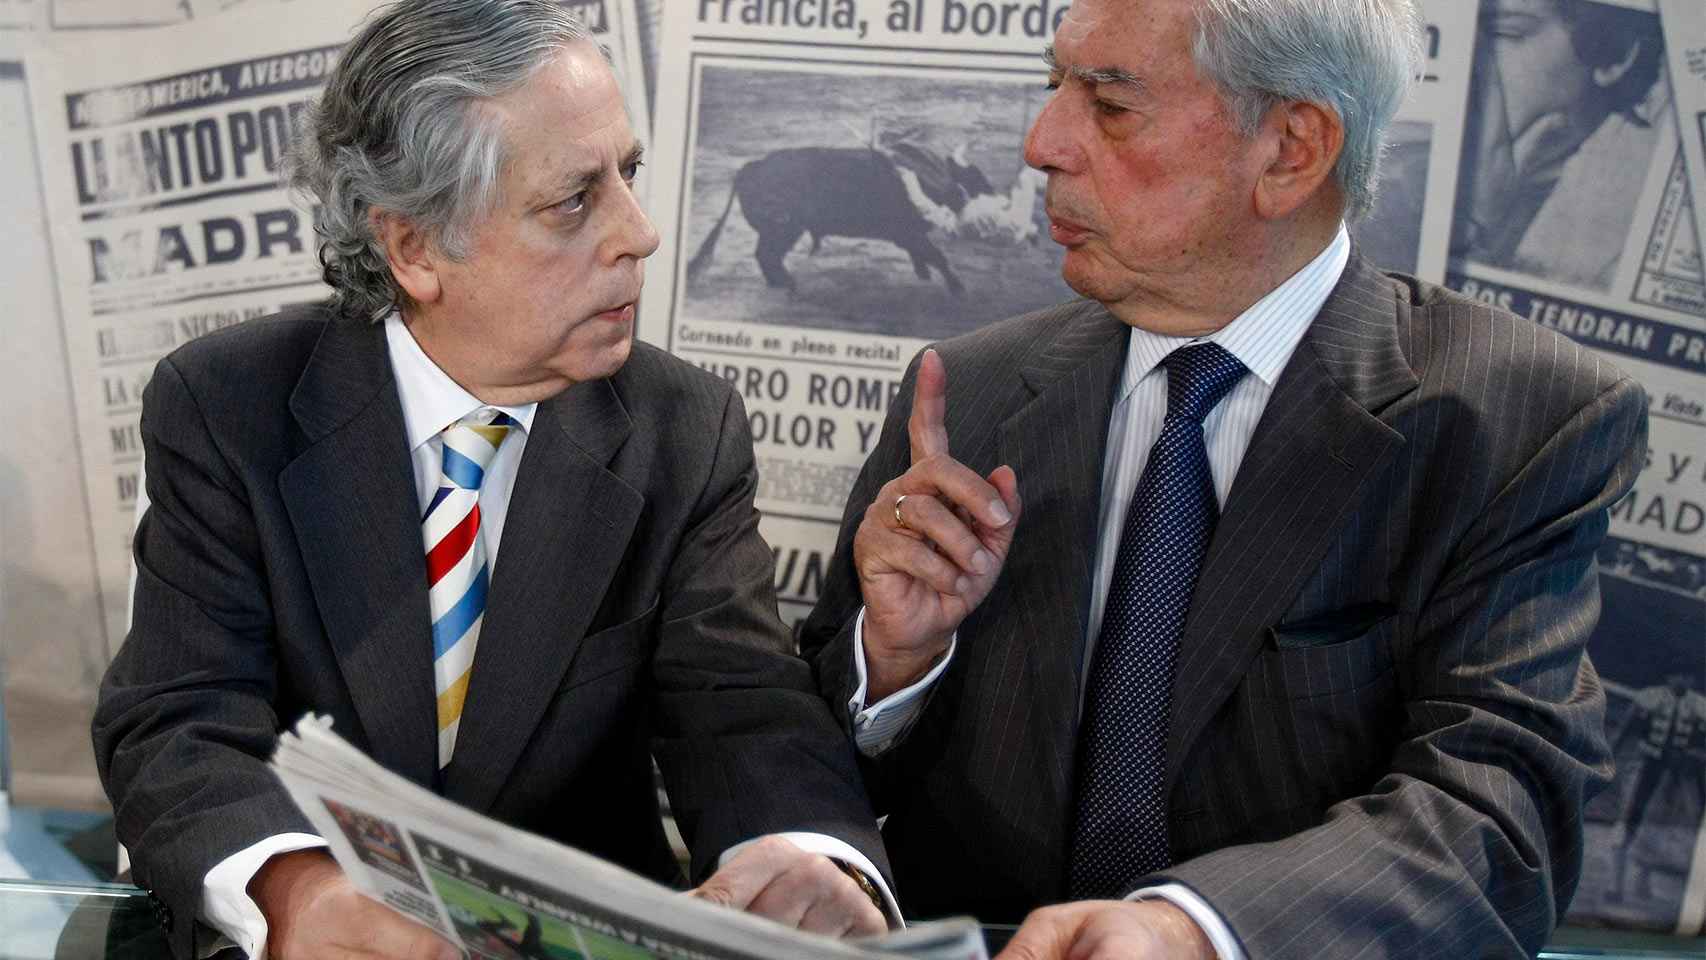 Mario Vargas Llosa conversa con el periodista Miguel Ángel Aguilar en una imagen de 2011